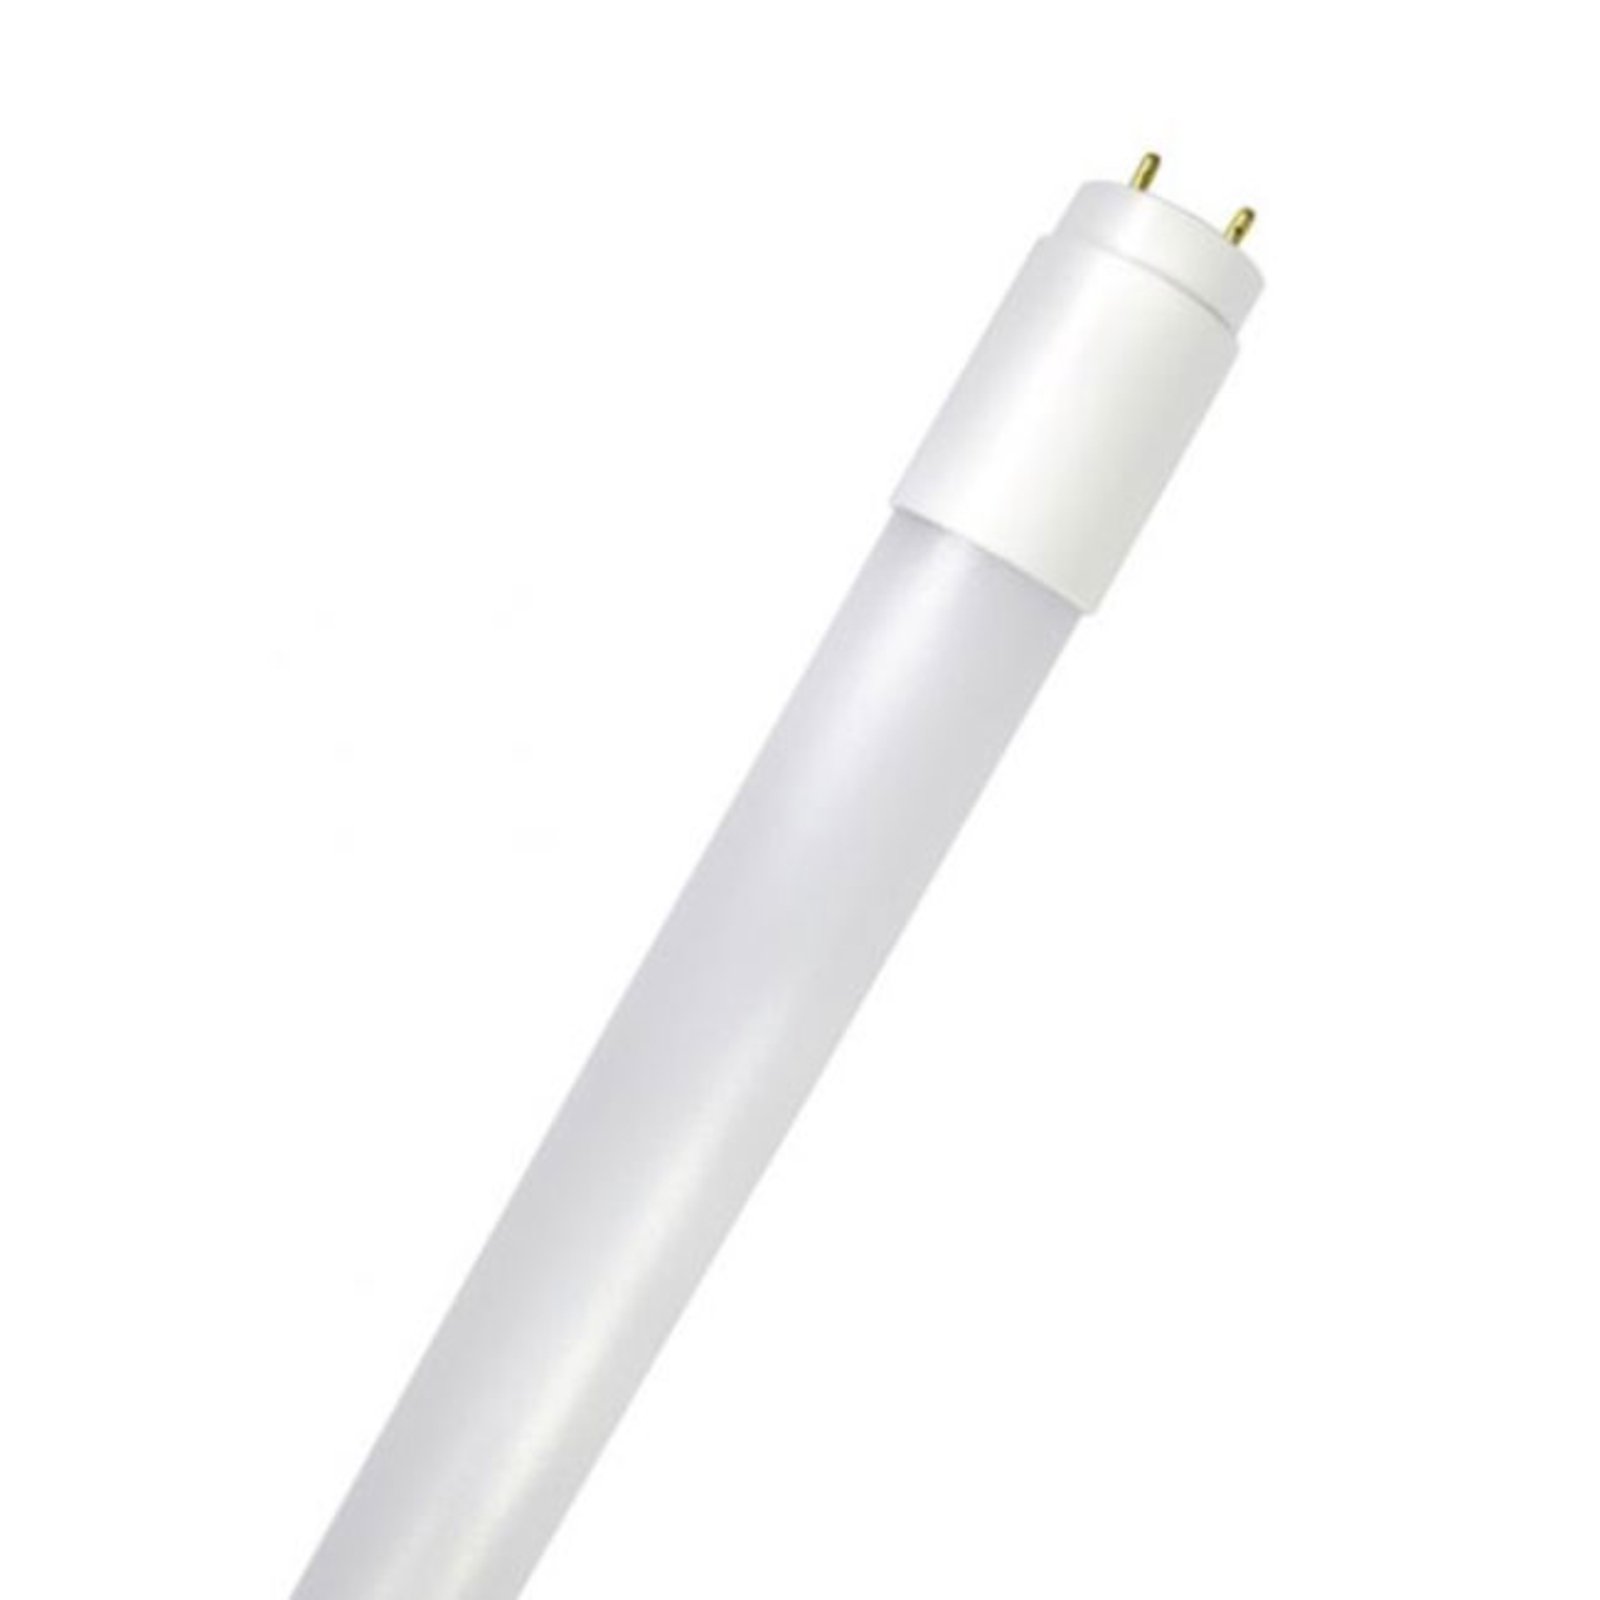 LED-putki GoLeaf T8 G13 V koko spektri 16W 120cm